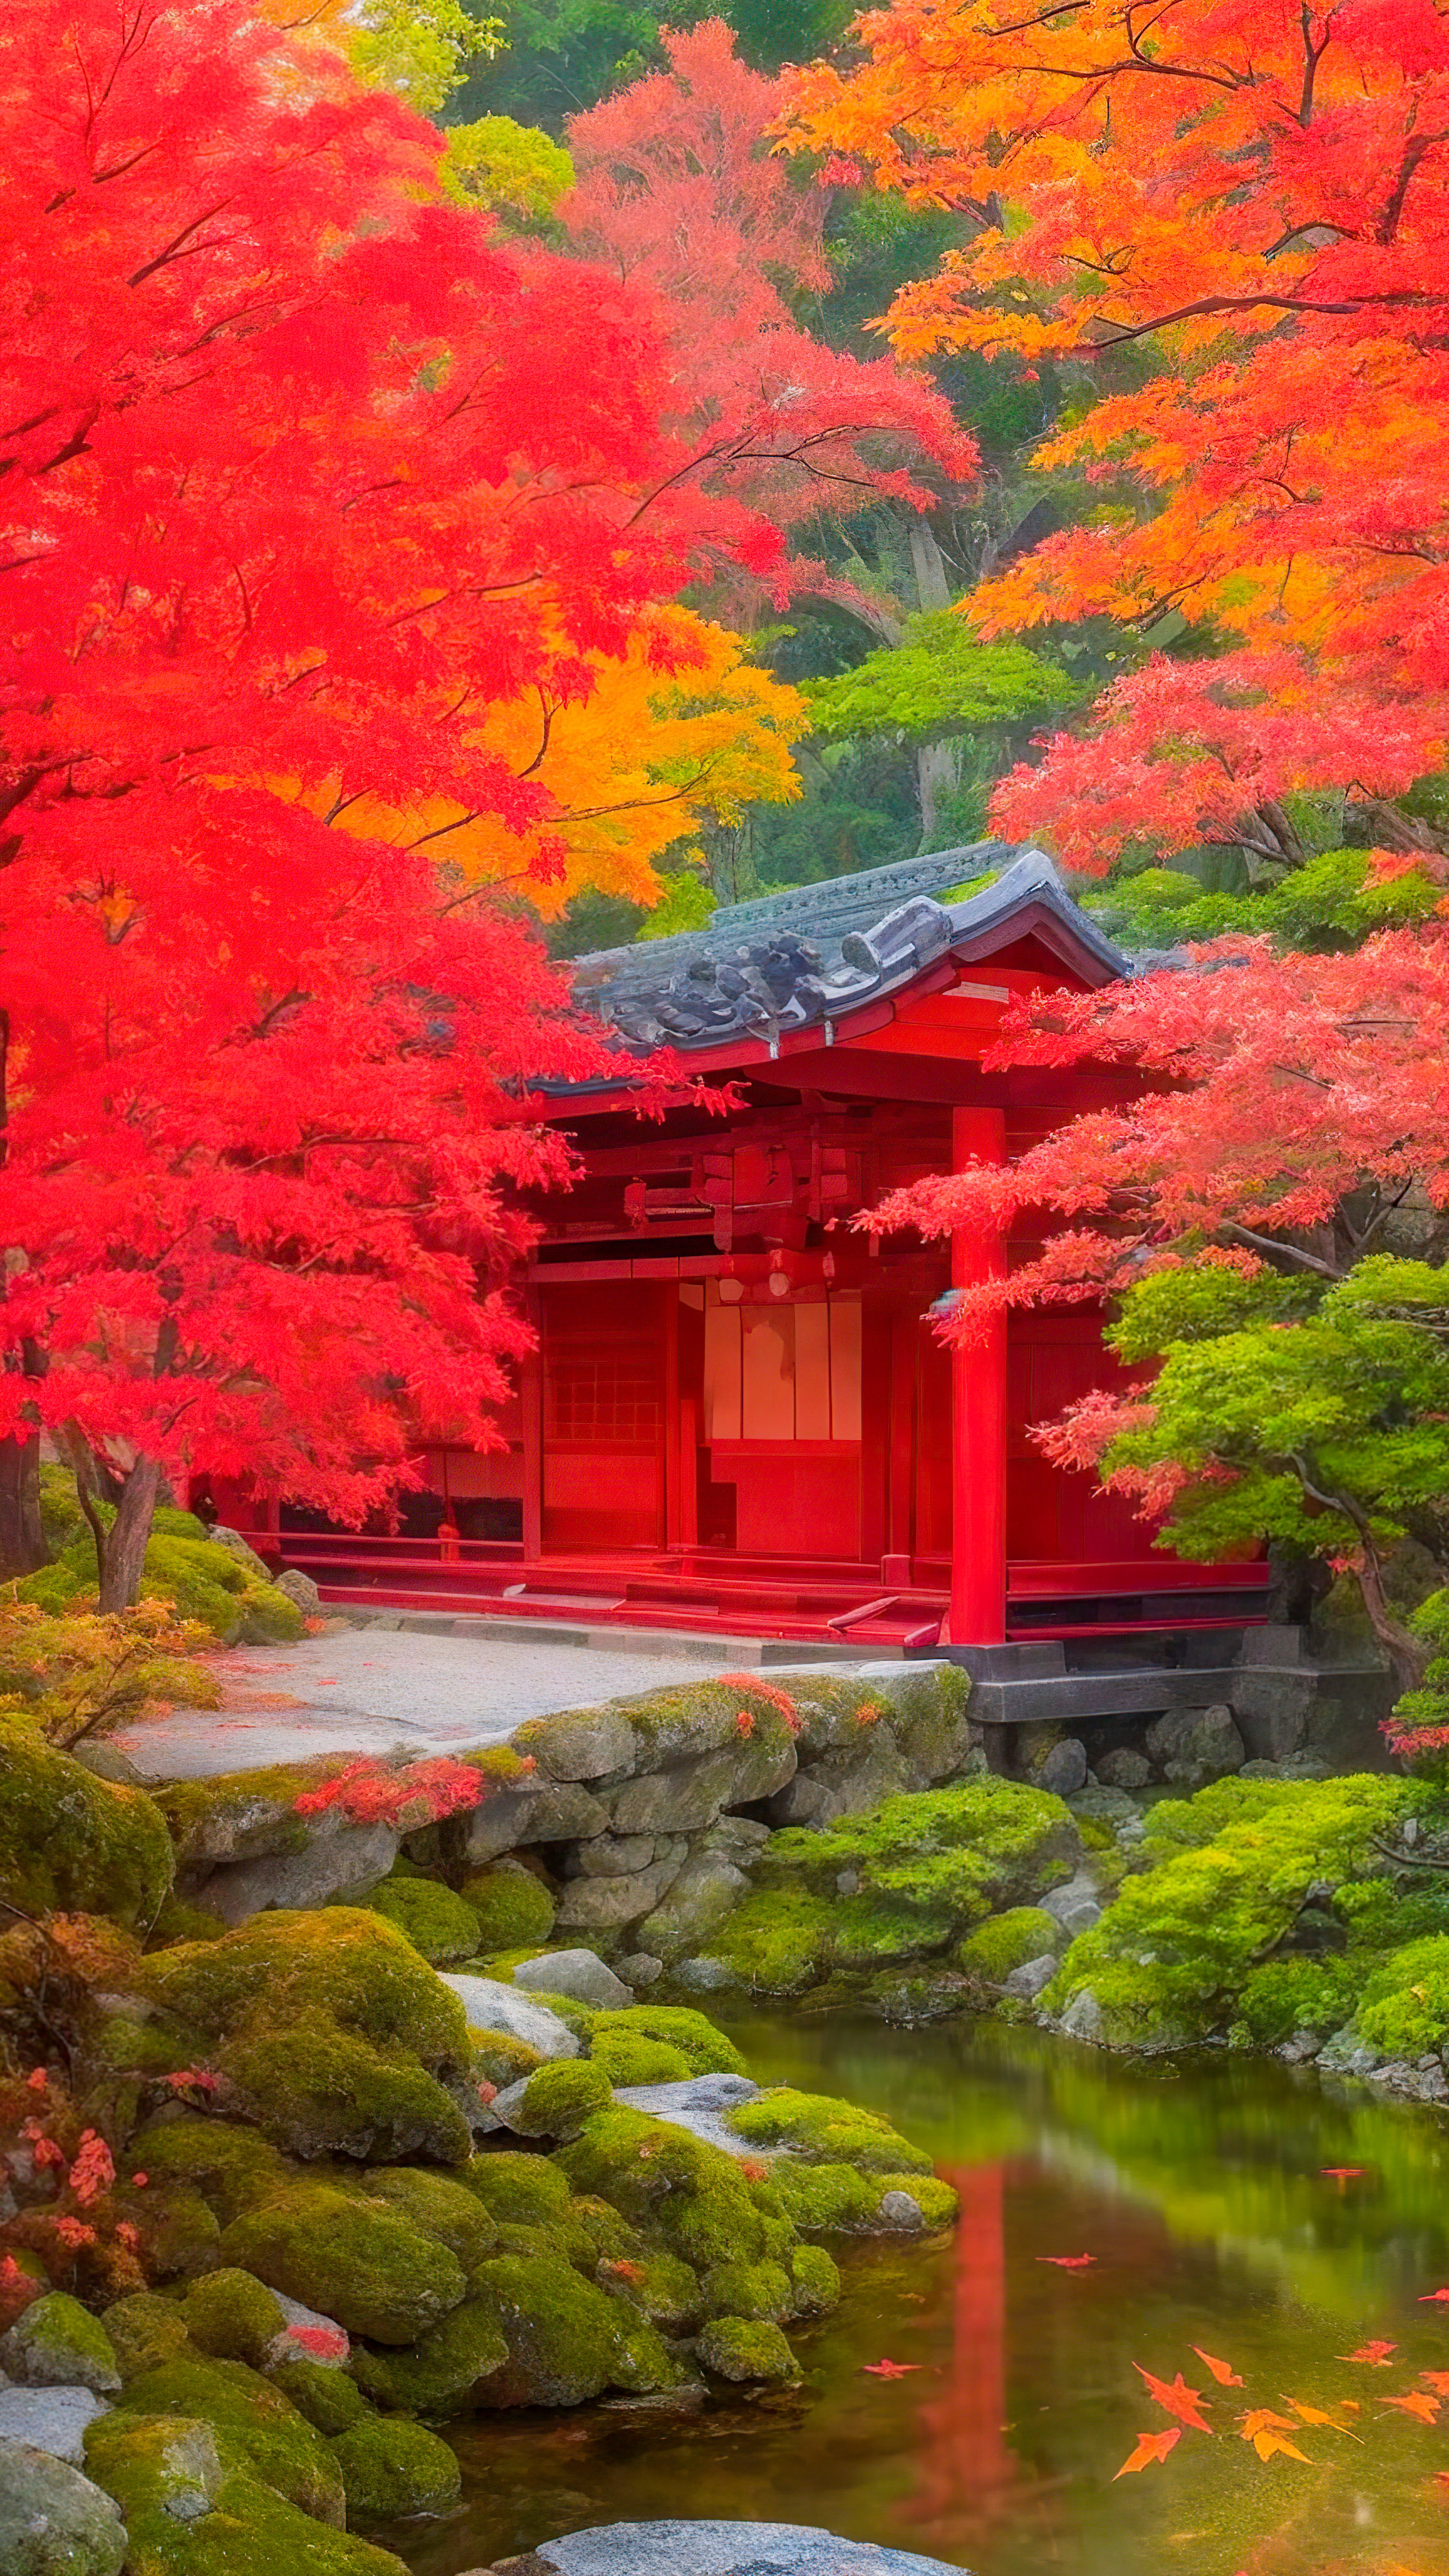 Ornez votre écran de verrouillage avec notre arrière-plan cool pour l'écran de verrouillage de l'iPhone, présentant un jardin japonais tranquille en automne, avec des feuilles d'érable rouges vibrantes contre une architecture traditionnelle. 